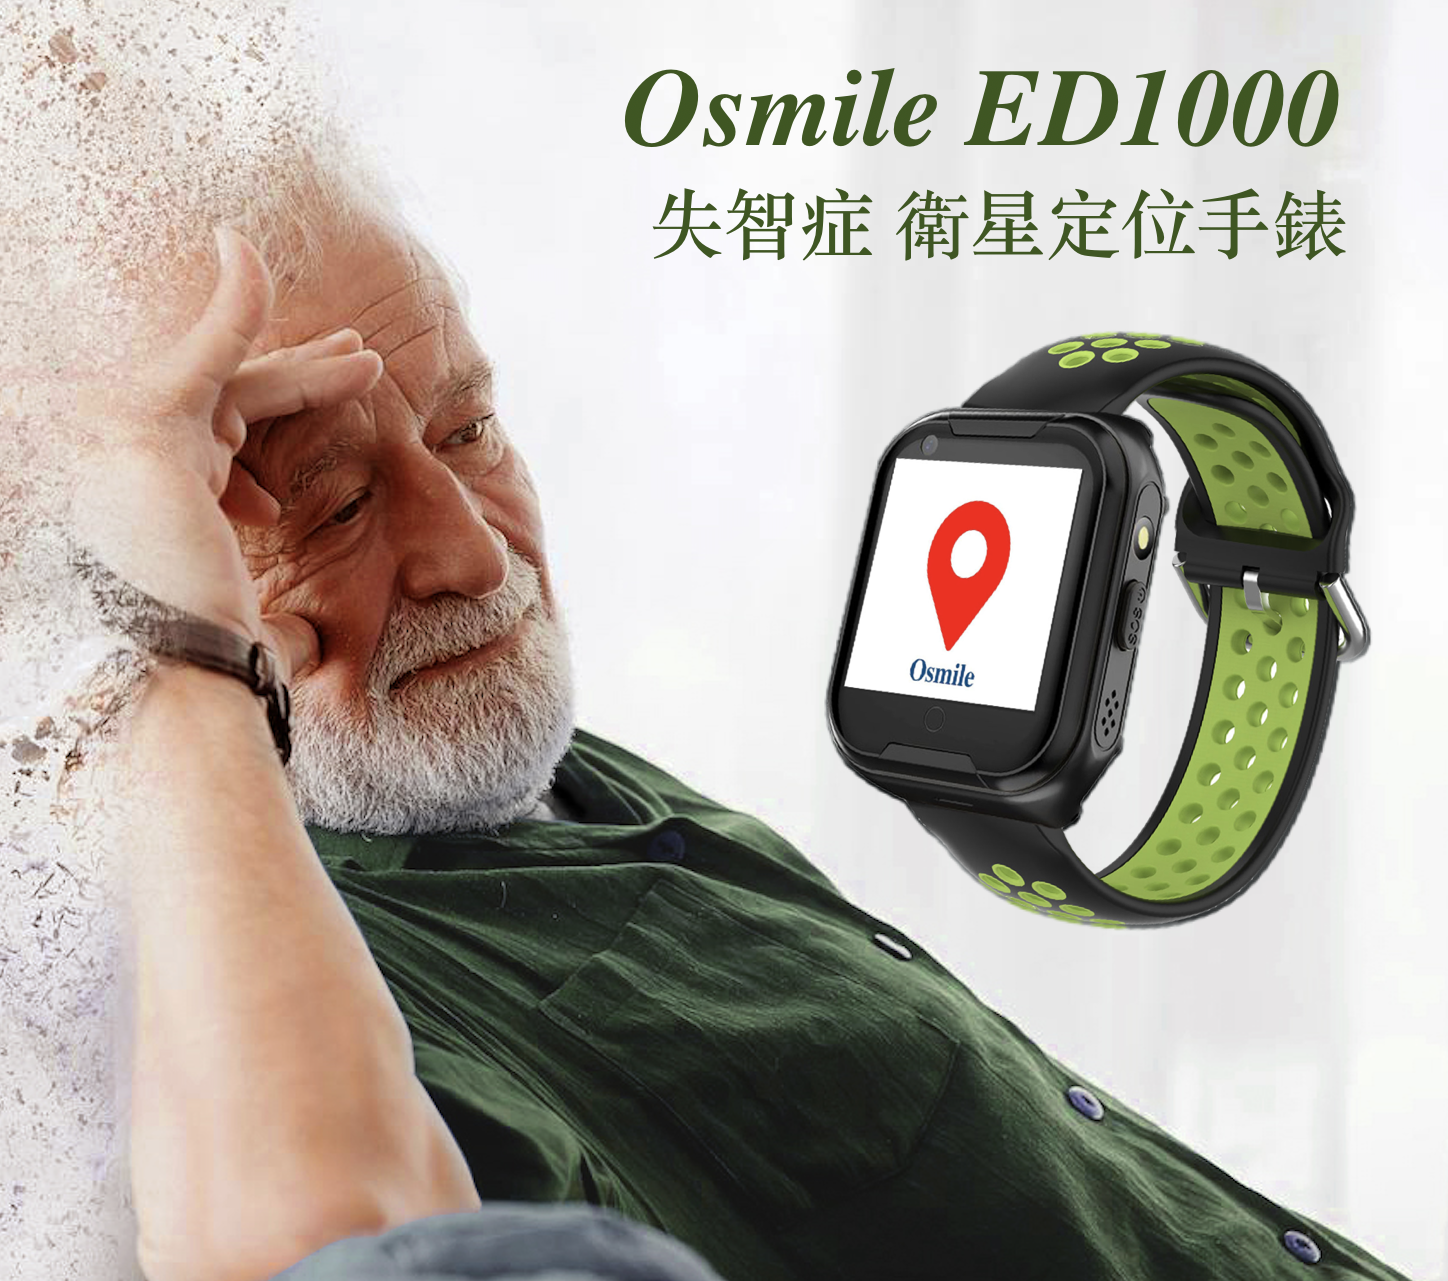 Osmile ED1000  (輔具款 BA 雙錶頭) 失智症 阿茲海默症 老人定位  GPS/SOS 求救定位手錶